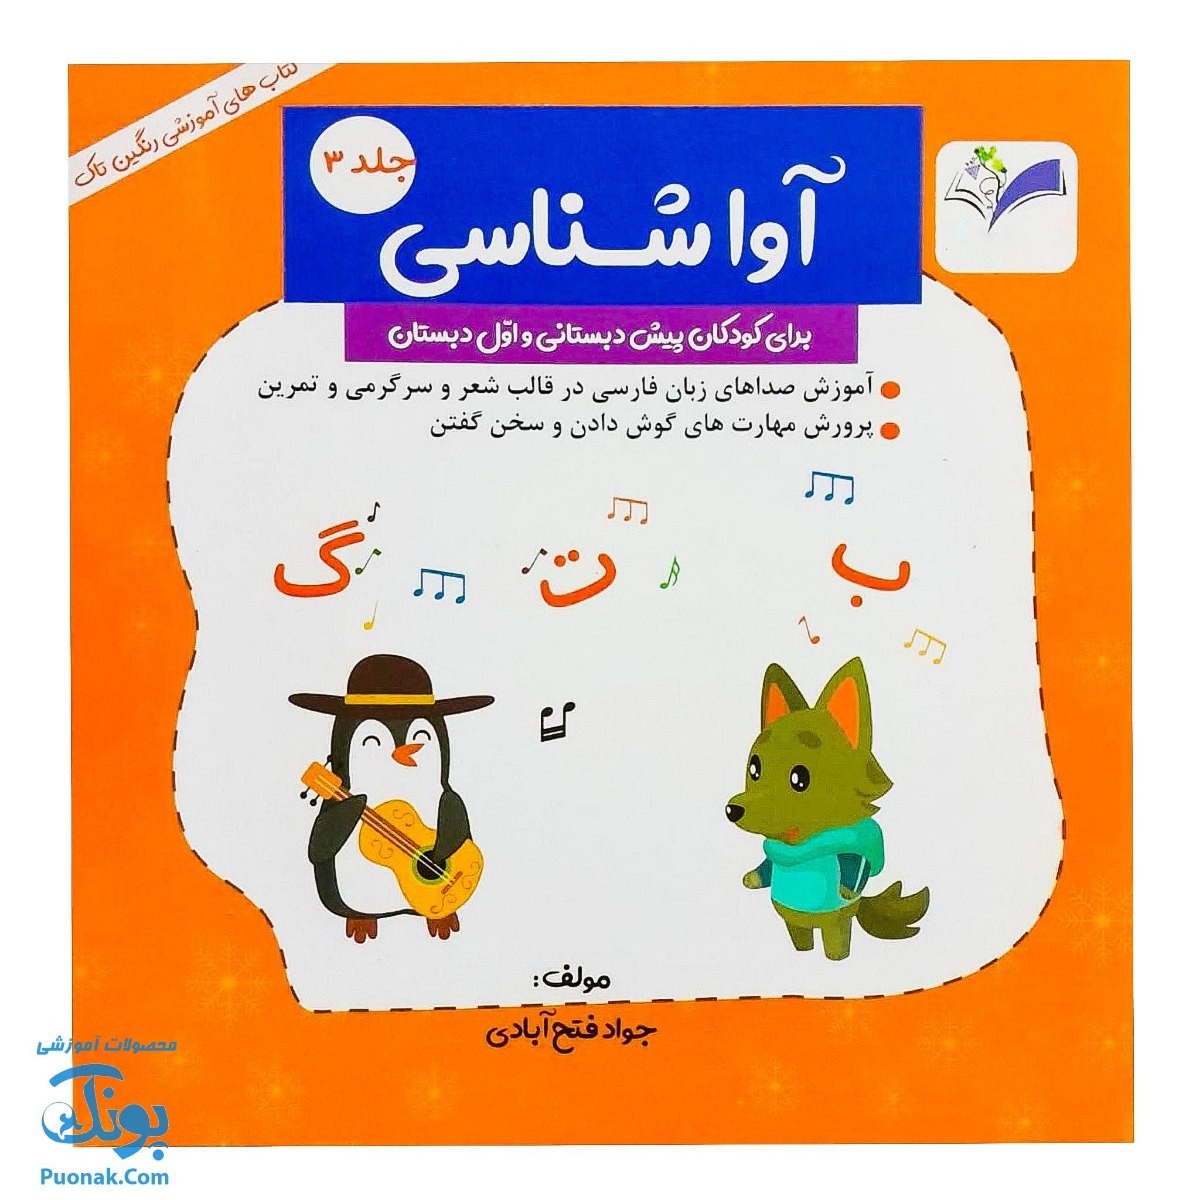 کتاب آموزش آوا شناسی ۳ برای کودکان پیش دبستانی و اول دبستان